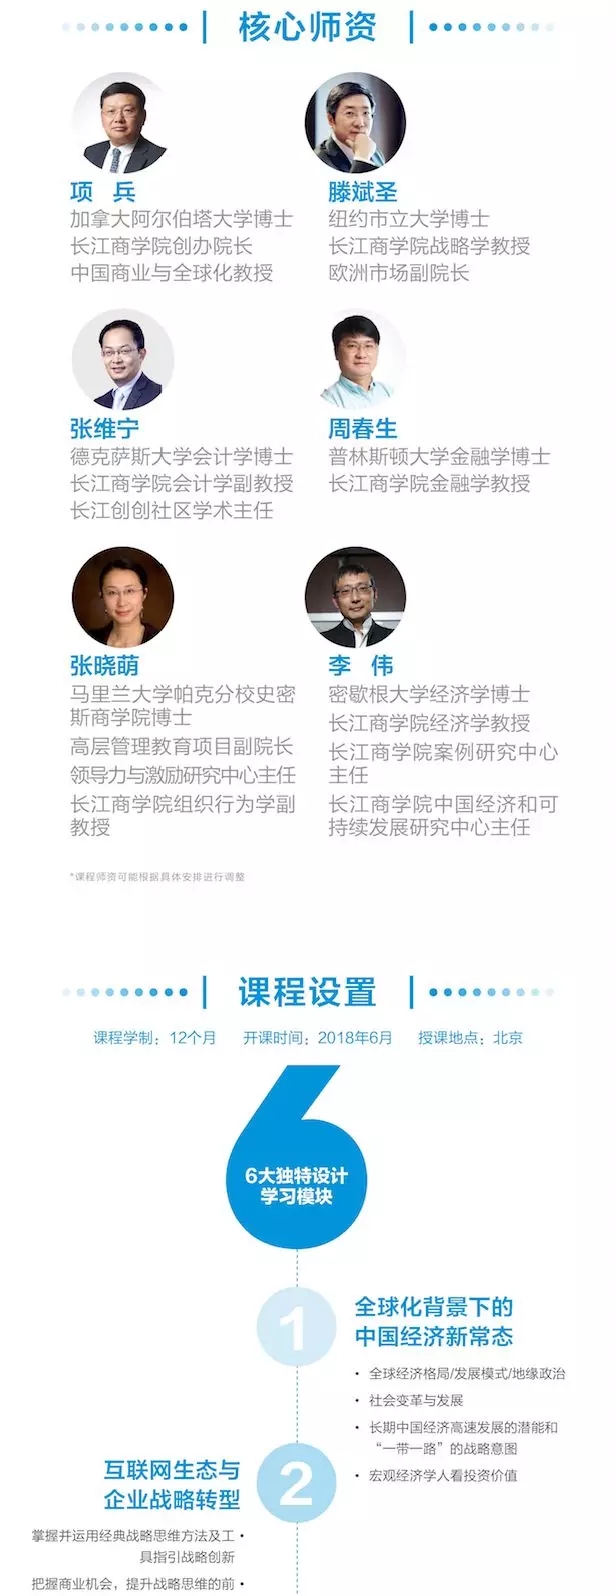 科技·变革·领导力 | 长江商学院与亦庄科技商会启动合作